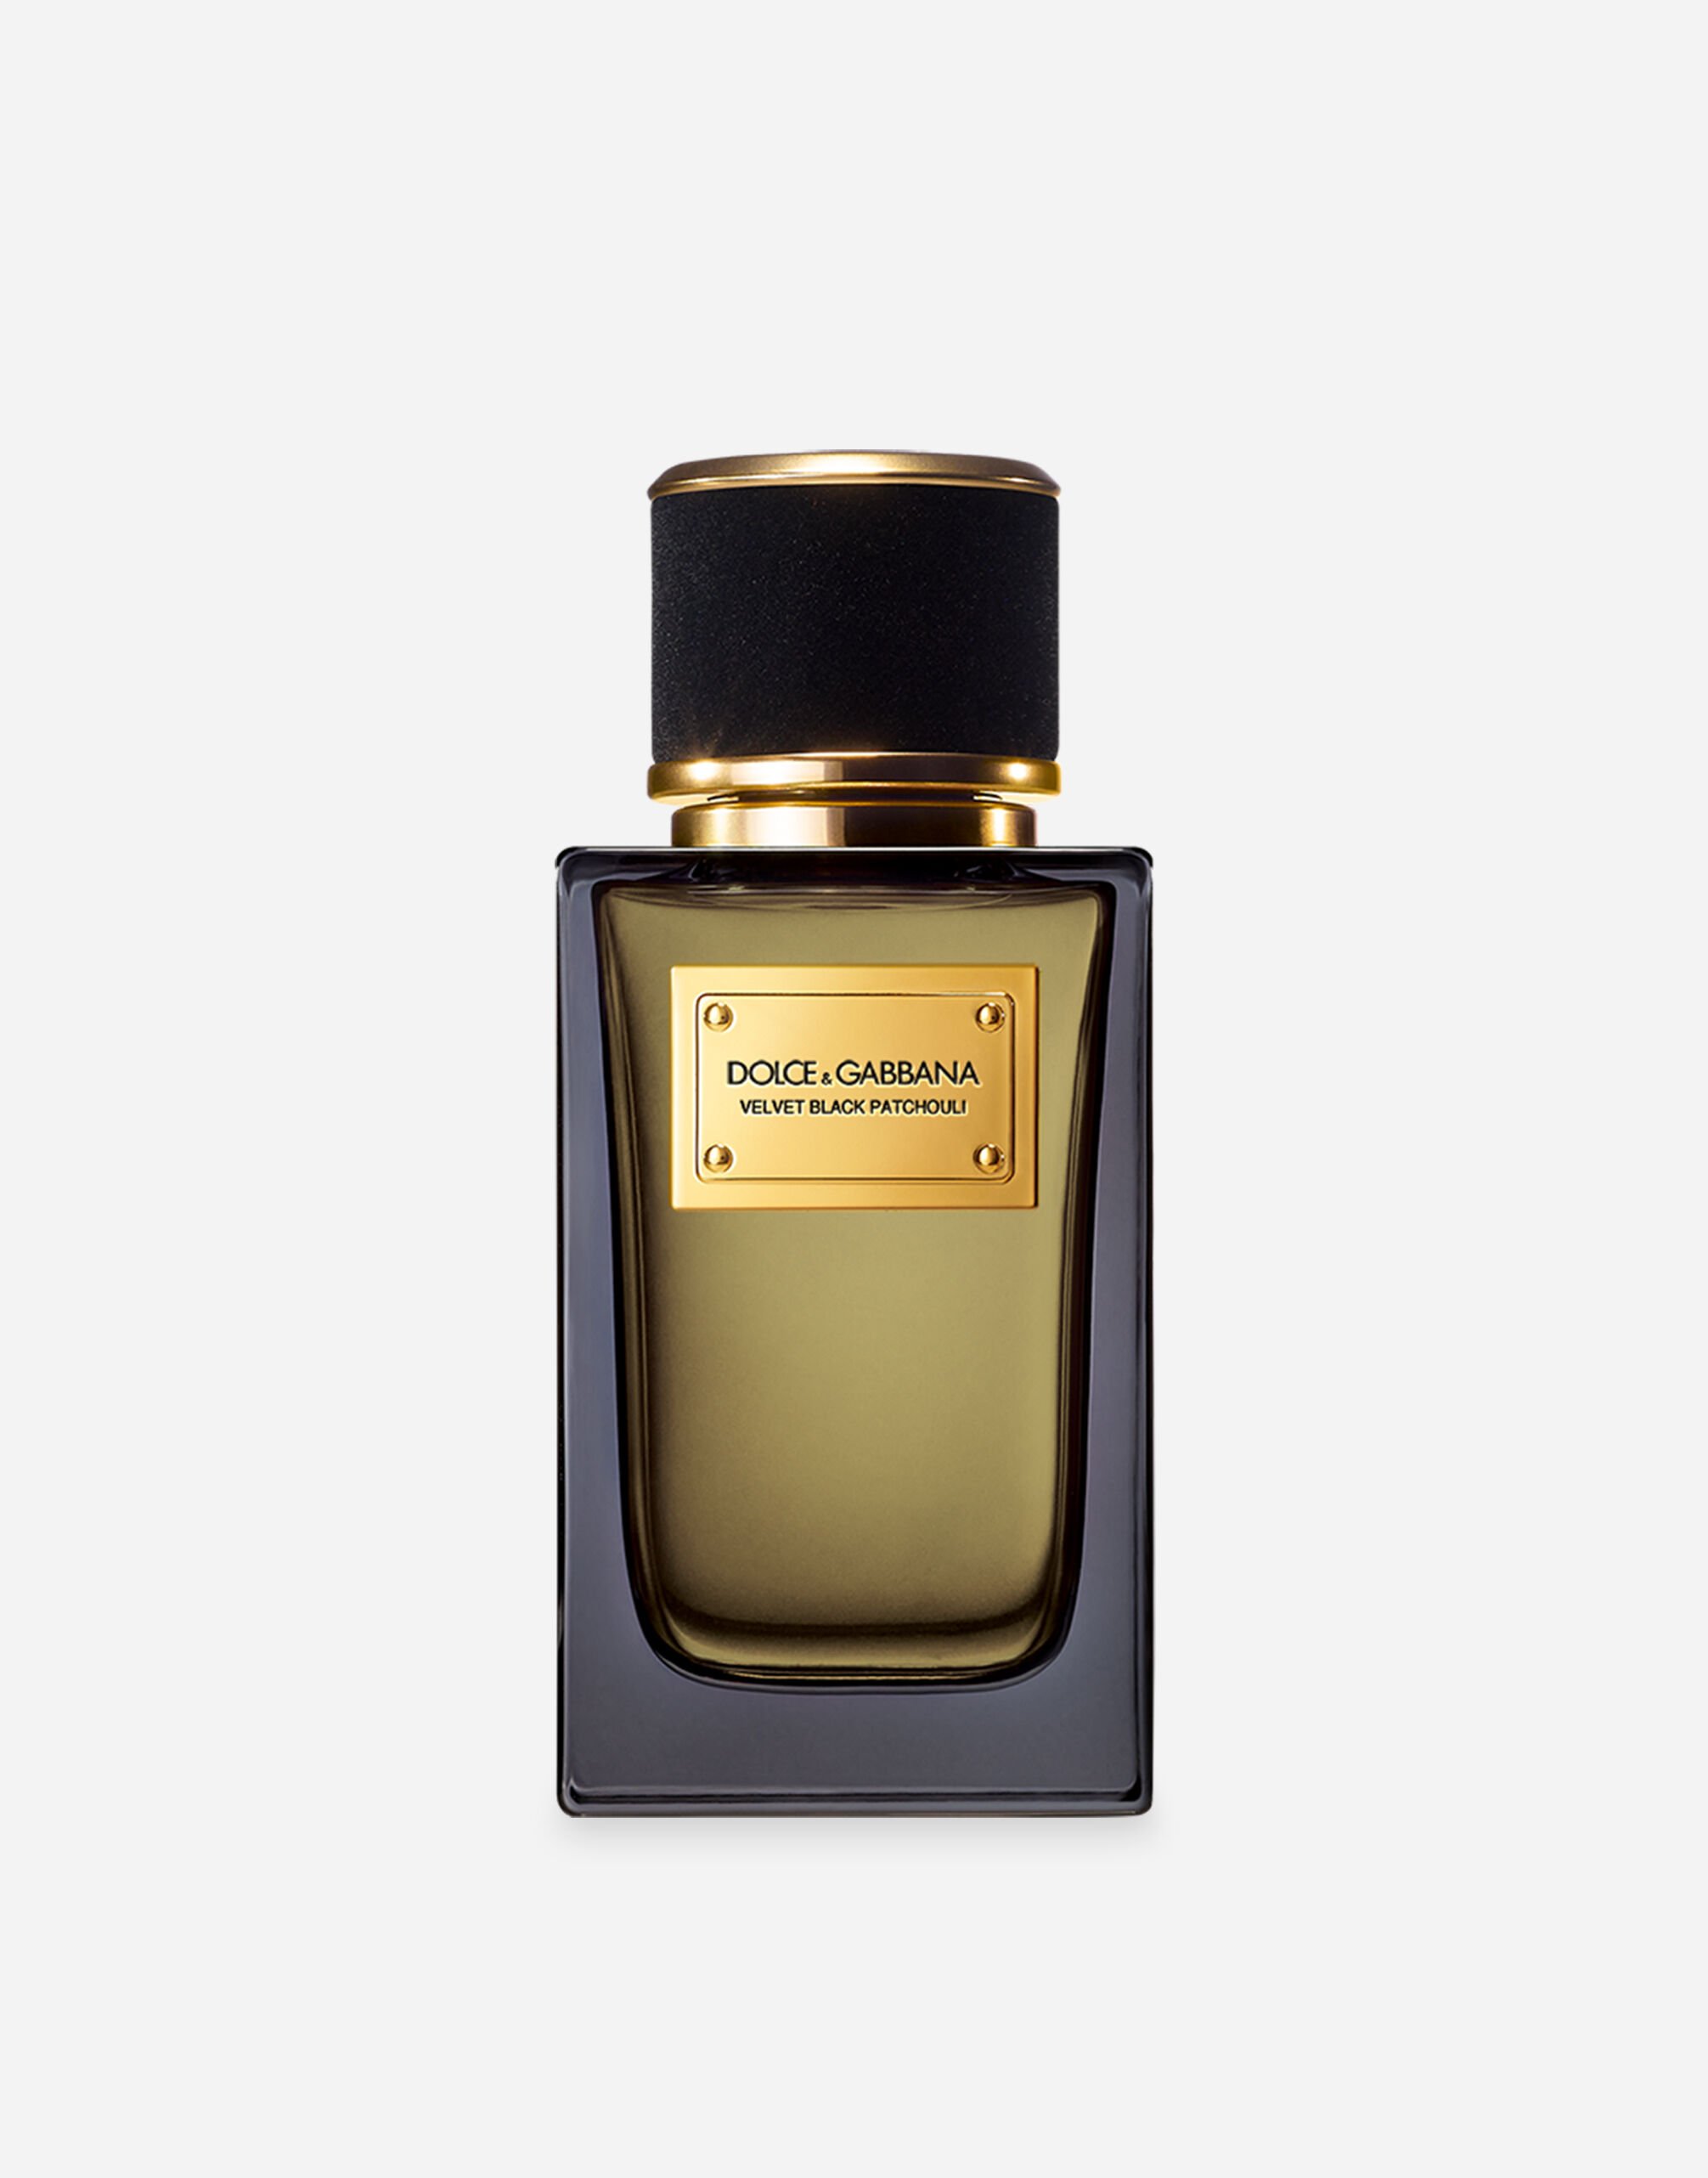 Dolce & Gabbana Velvet Black Patchouli Eau de Parfum - VP6975VP243